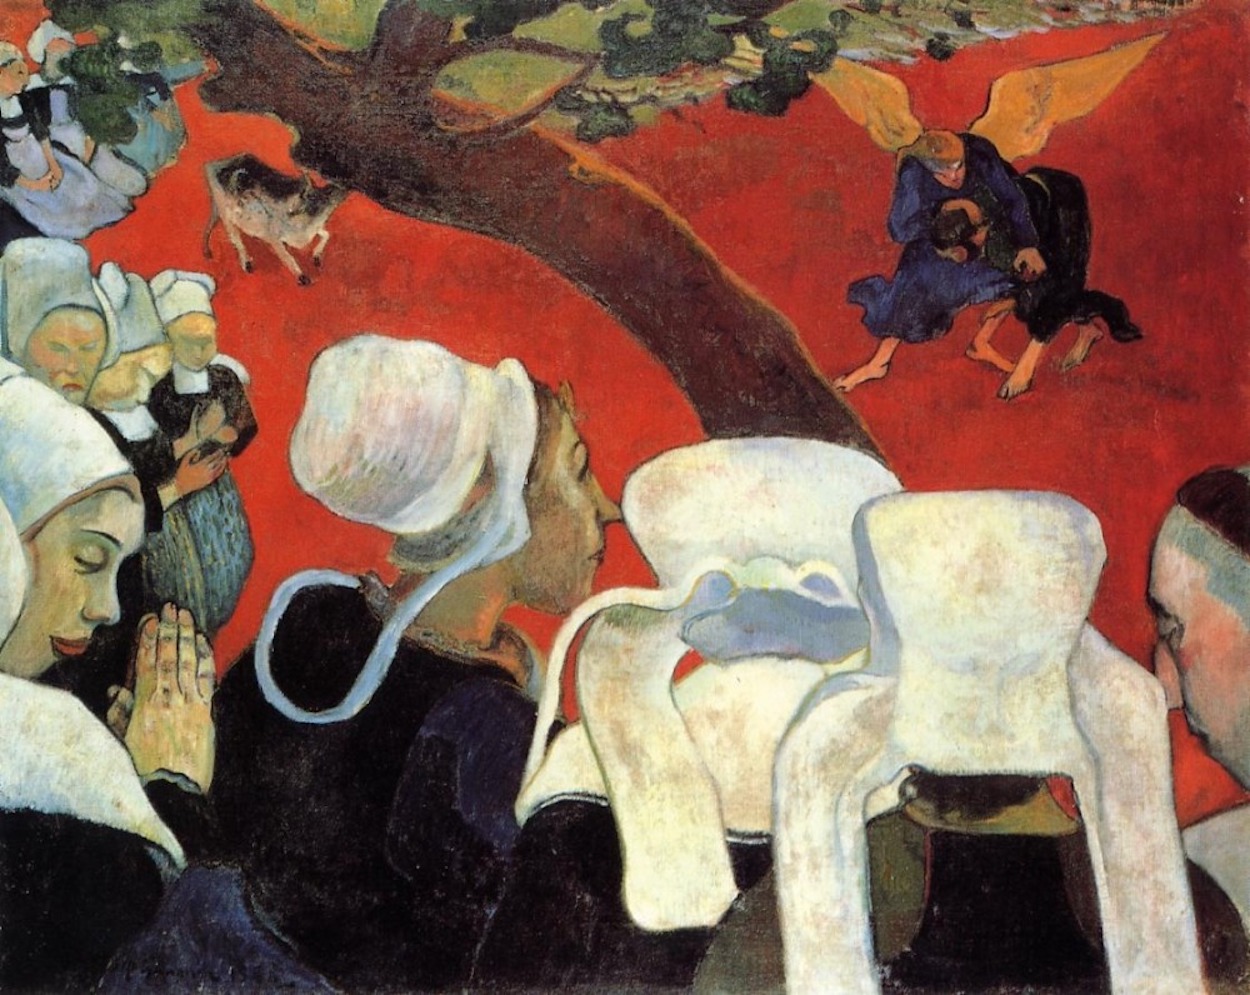 Vaaz Sonrası Hayal Gücü by Paul Gauguin - 1888 - 74.4 x 93.1 cm 